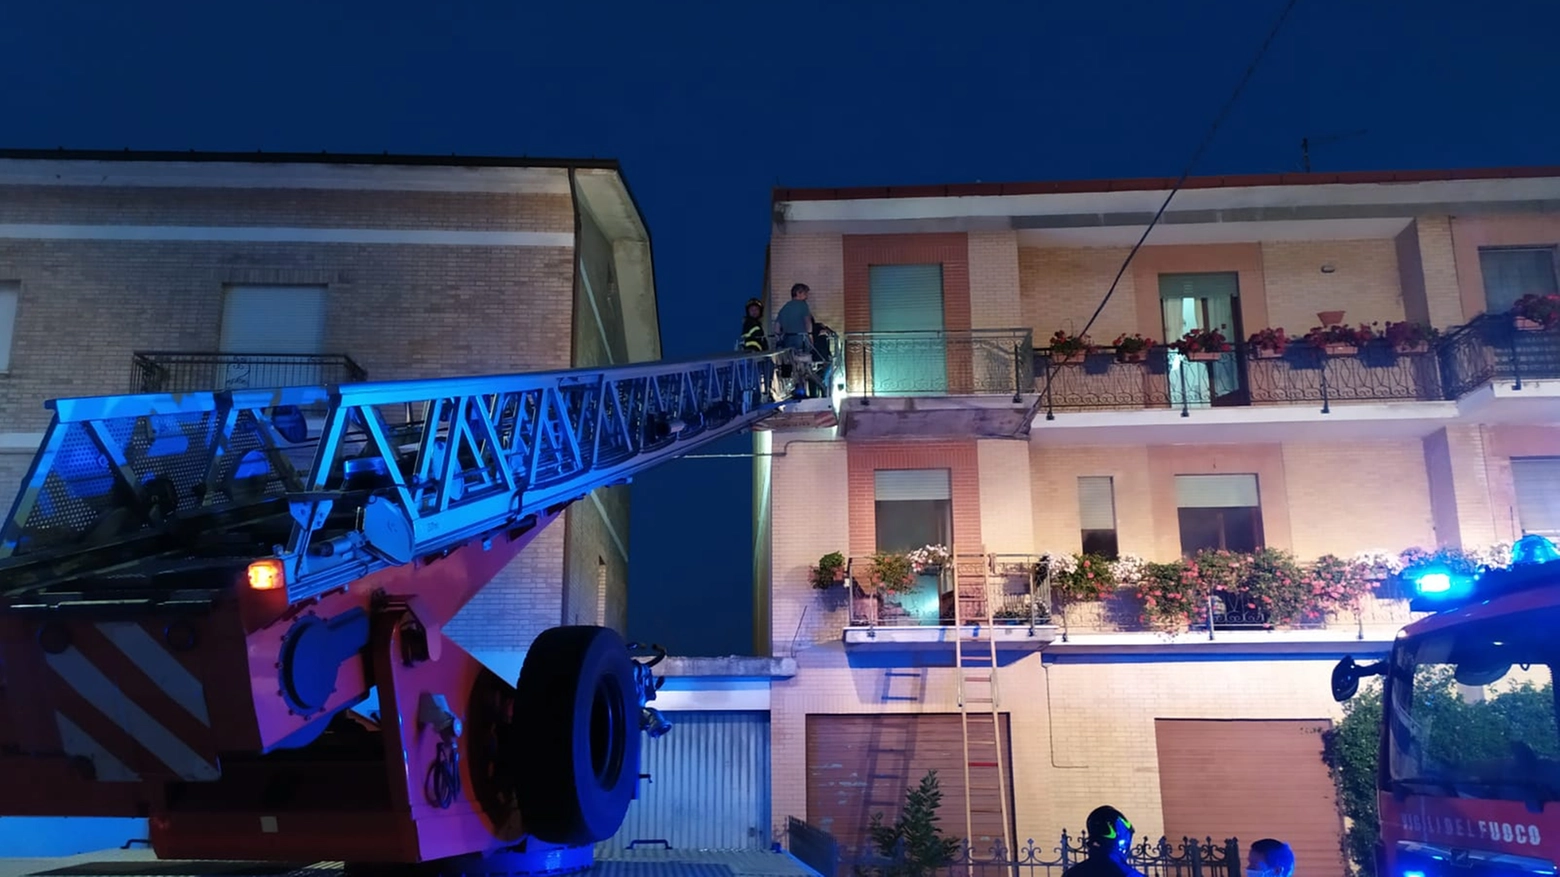 Monte Vidon Corrado, 6 persone salvate dai pompieri (Zeppilli)